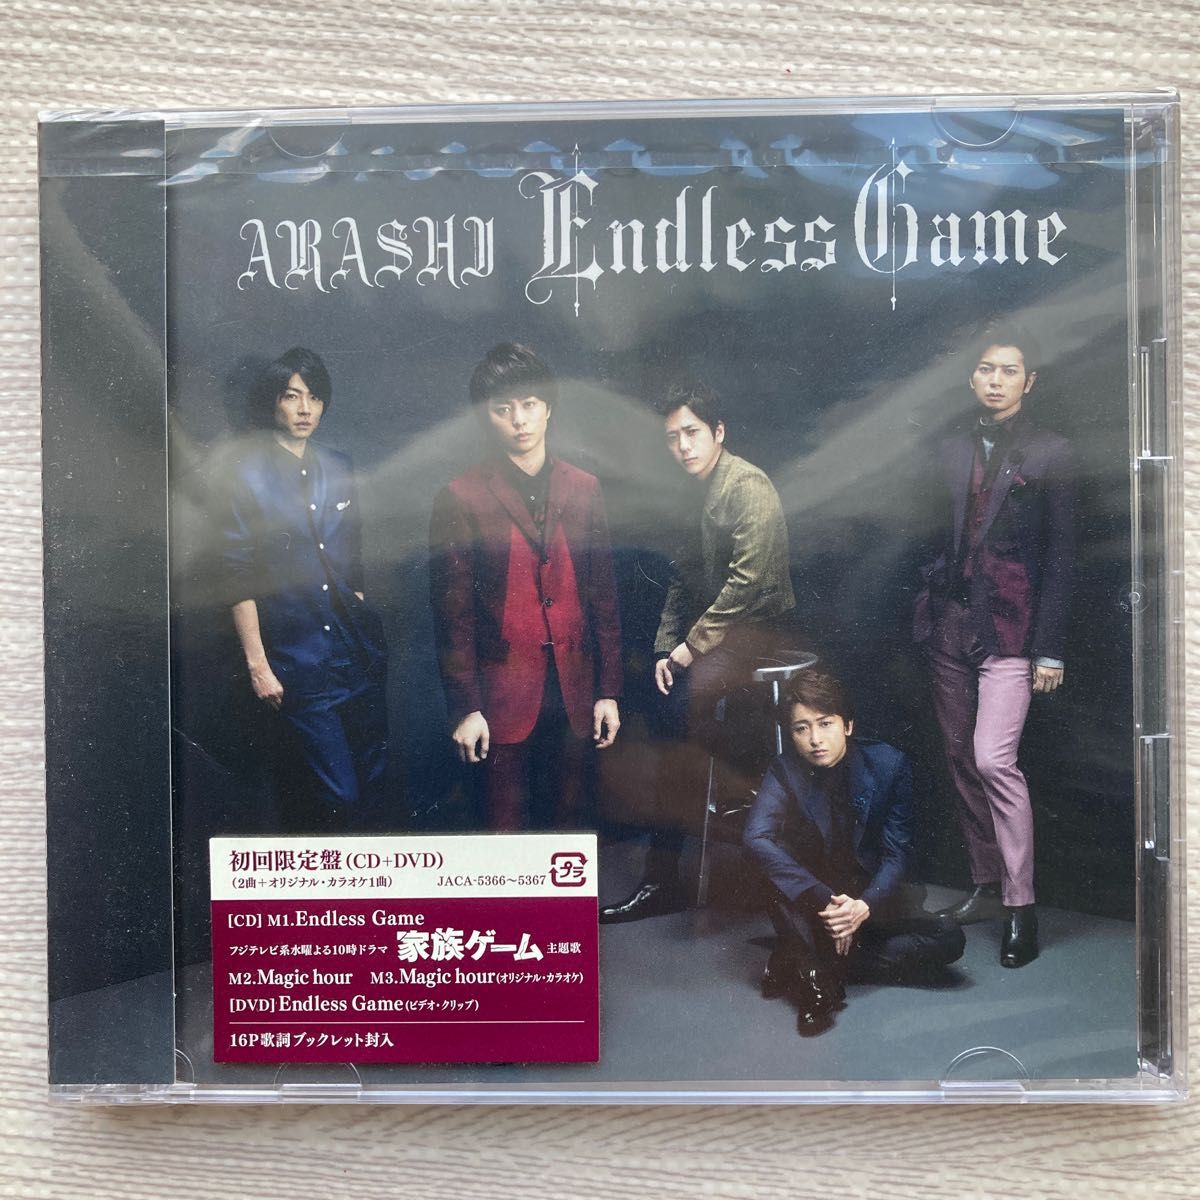 嵐 CD+DVD/Endless Game 初回盤 13/5/29発売 オリコン加盟店